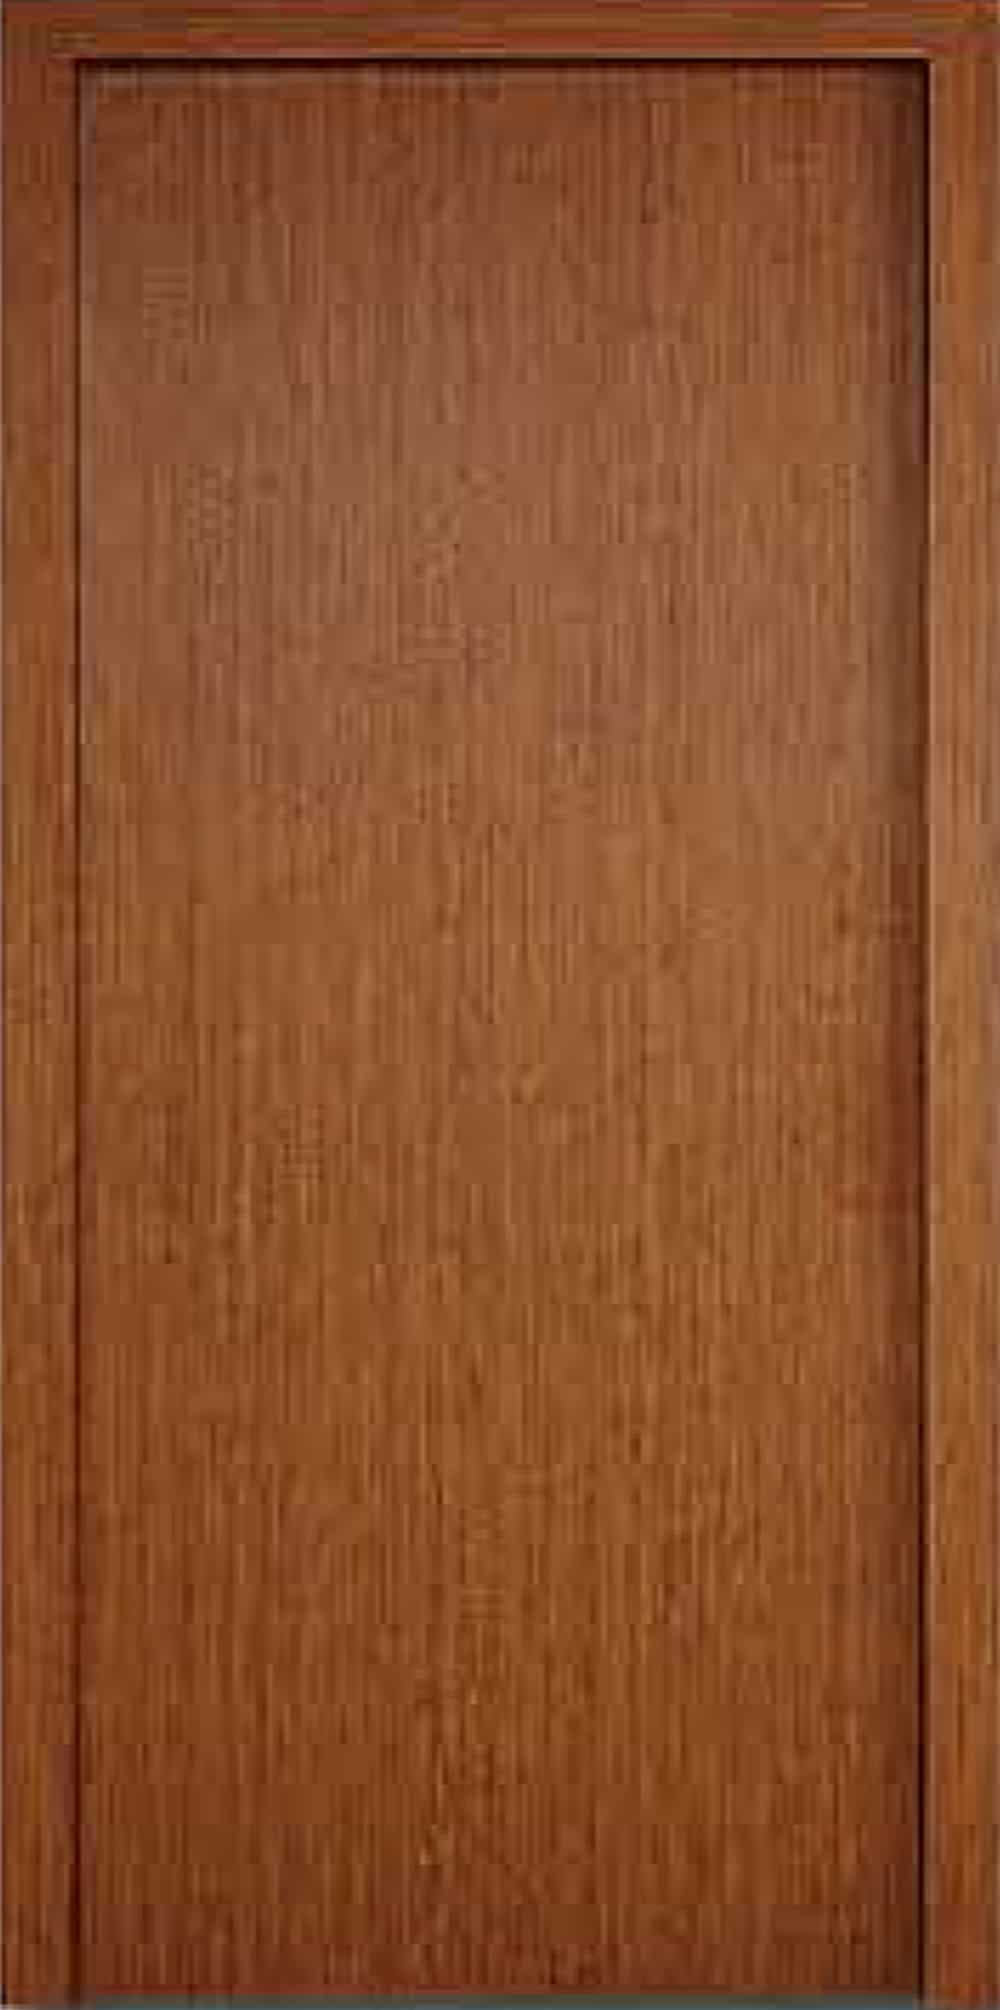 DOOR SV 4728 - Stanford Vinyl Laminated Deco Door